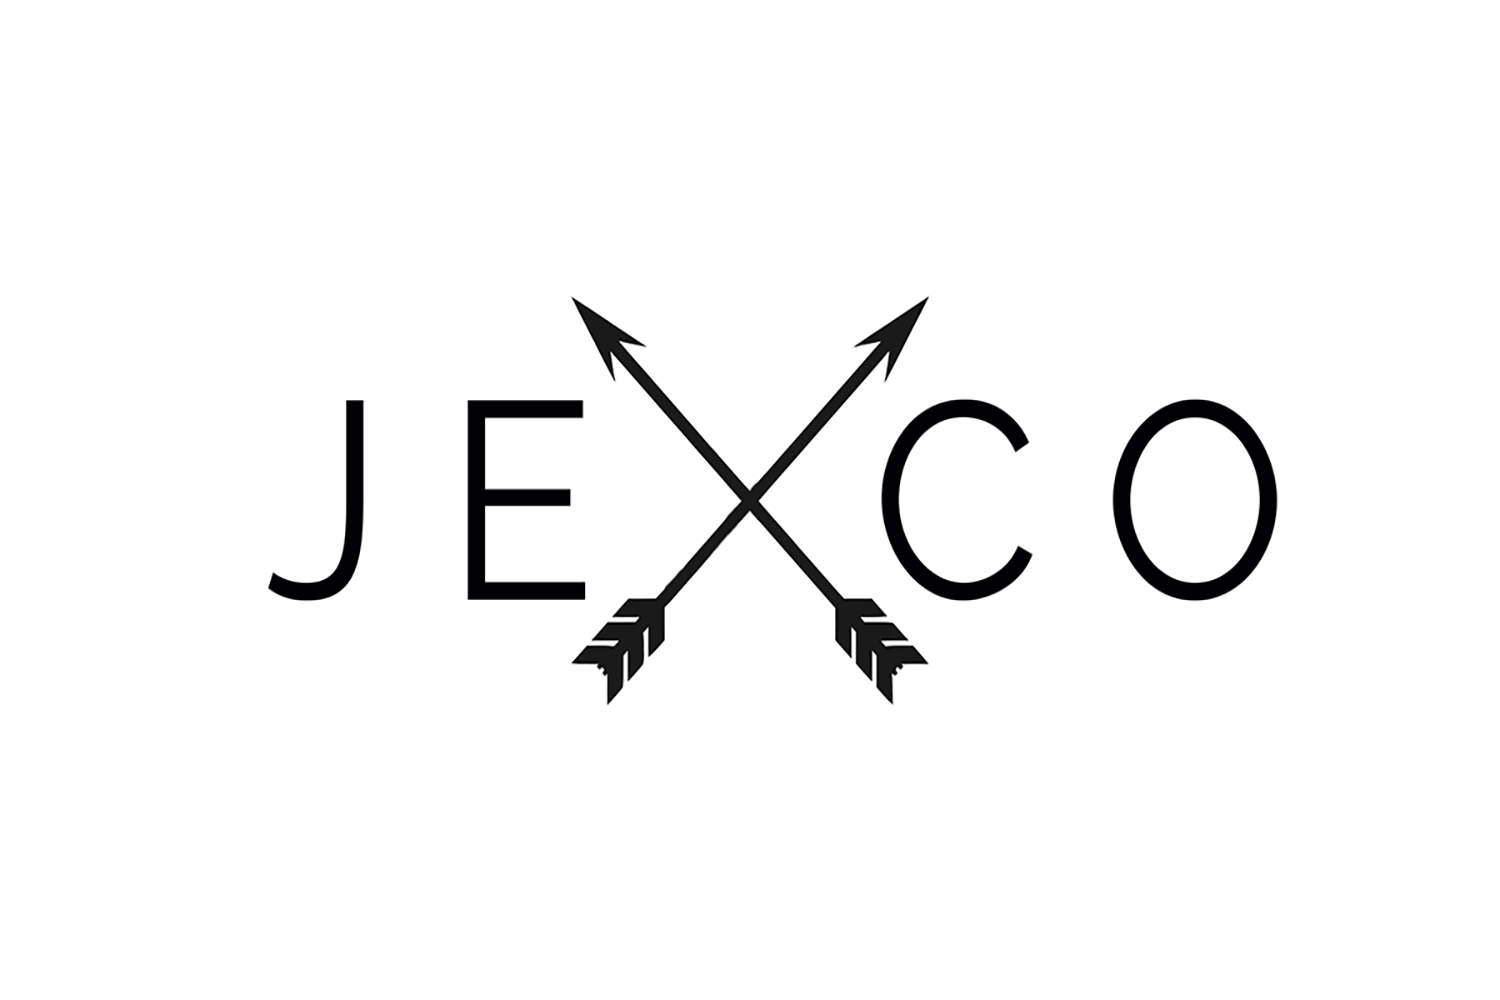 Jexco Clothing logo - East Liverpool, Ohio